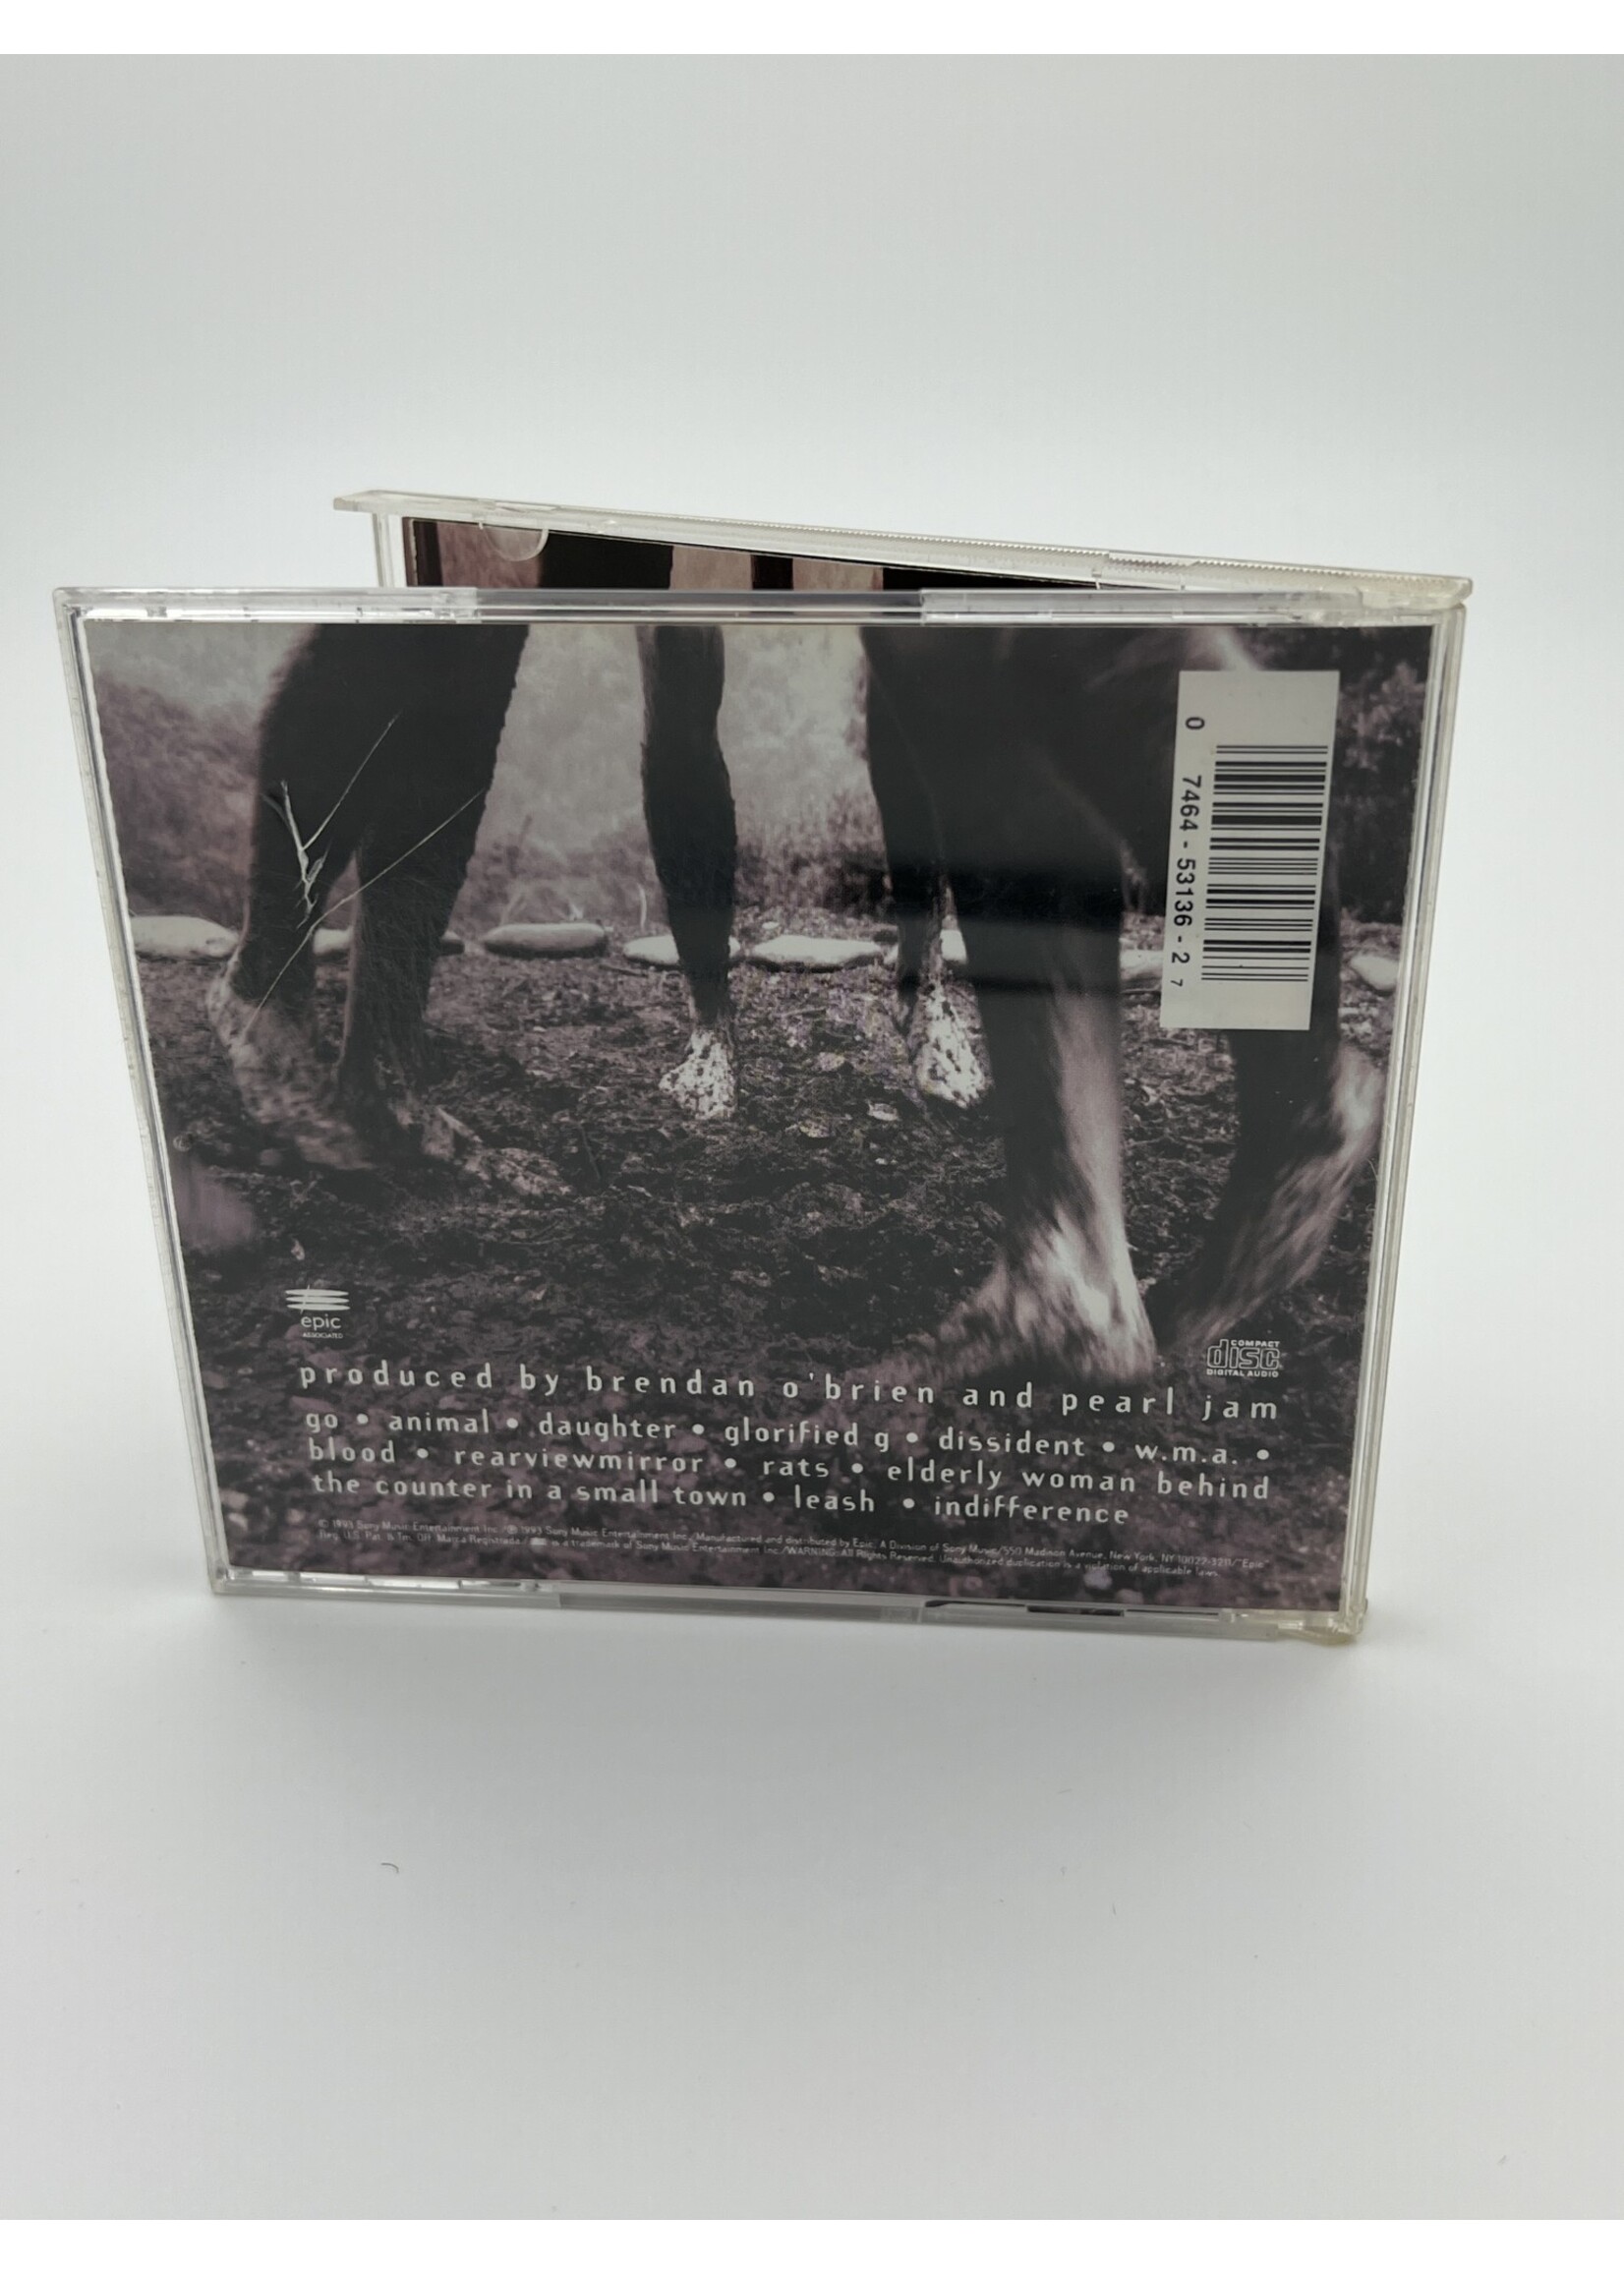 CD Pearl Jam Self Titled CD